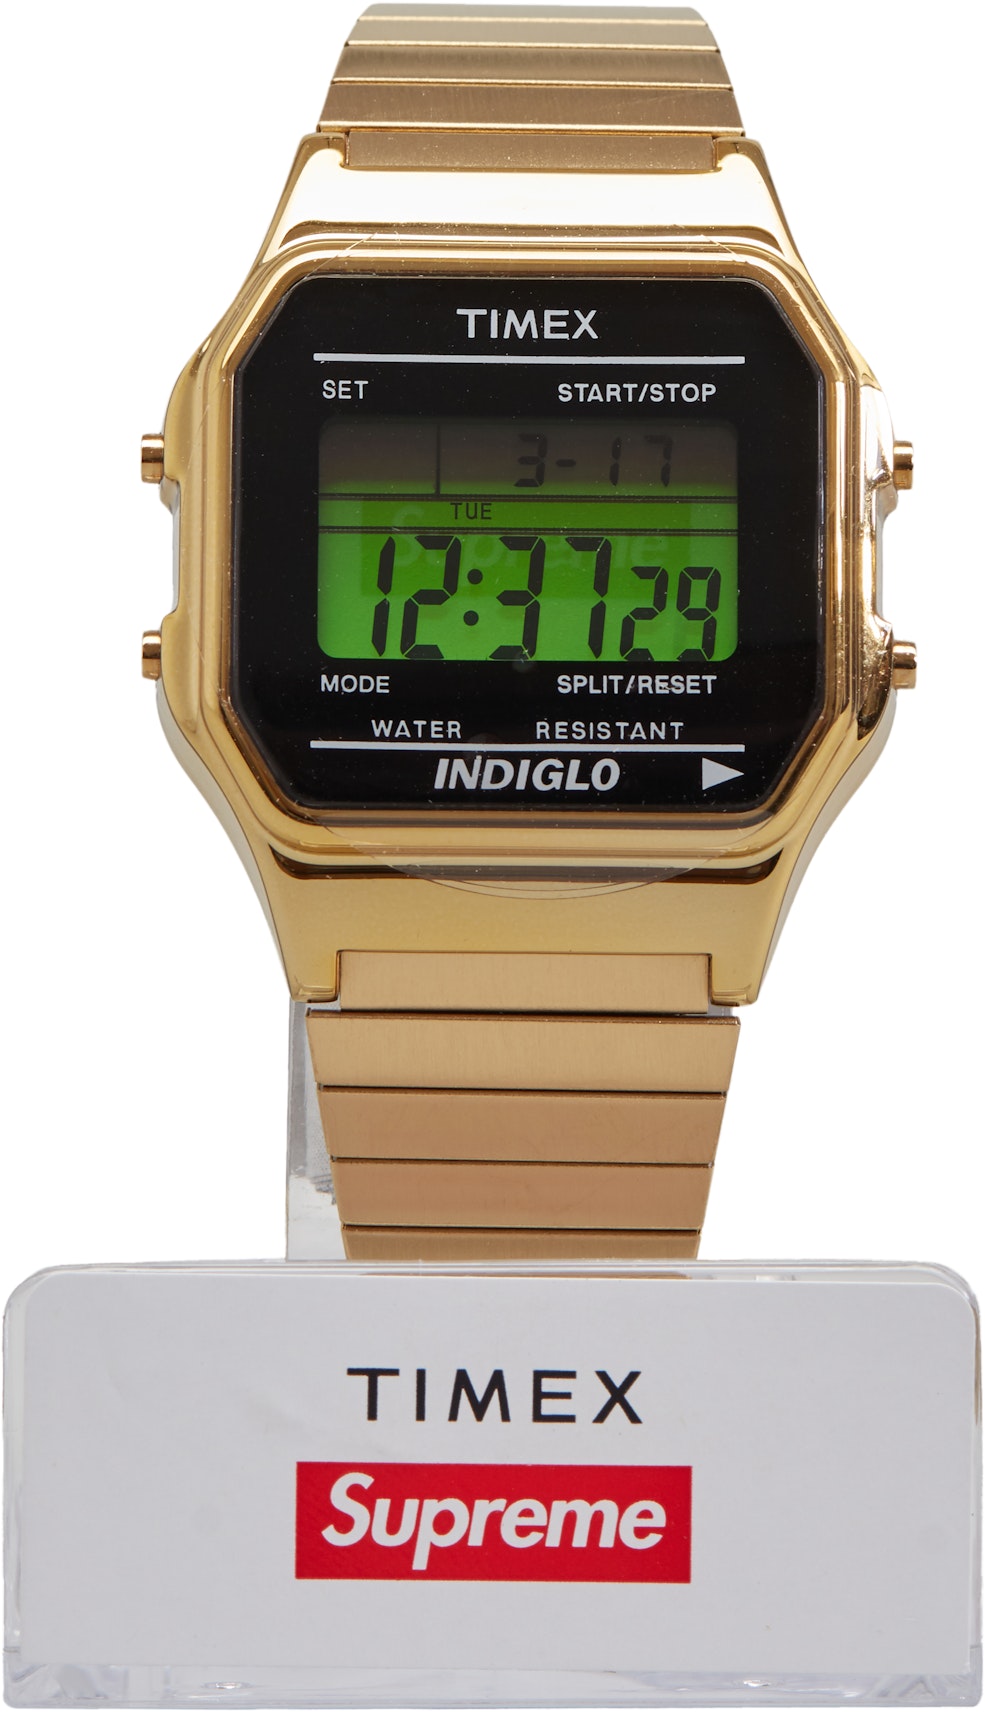 værdi Overdreven højt Supreme Timex Digital Watch Gold - FW19 - US